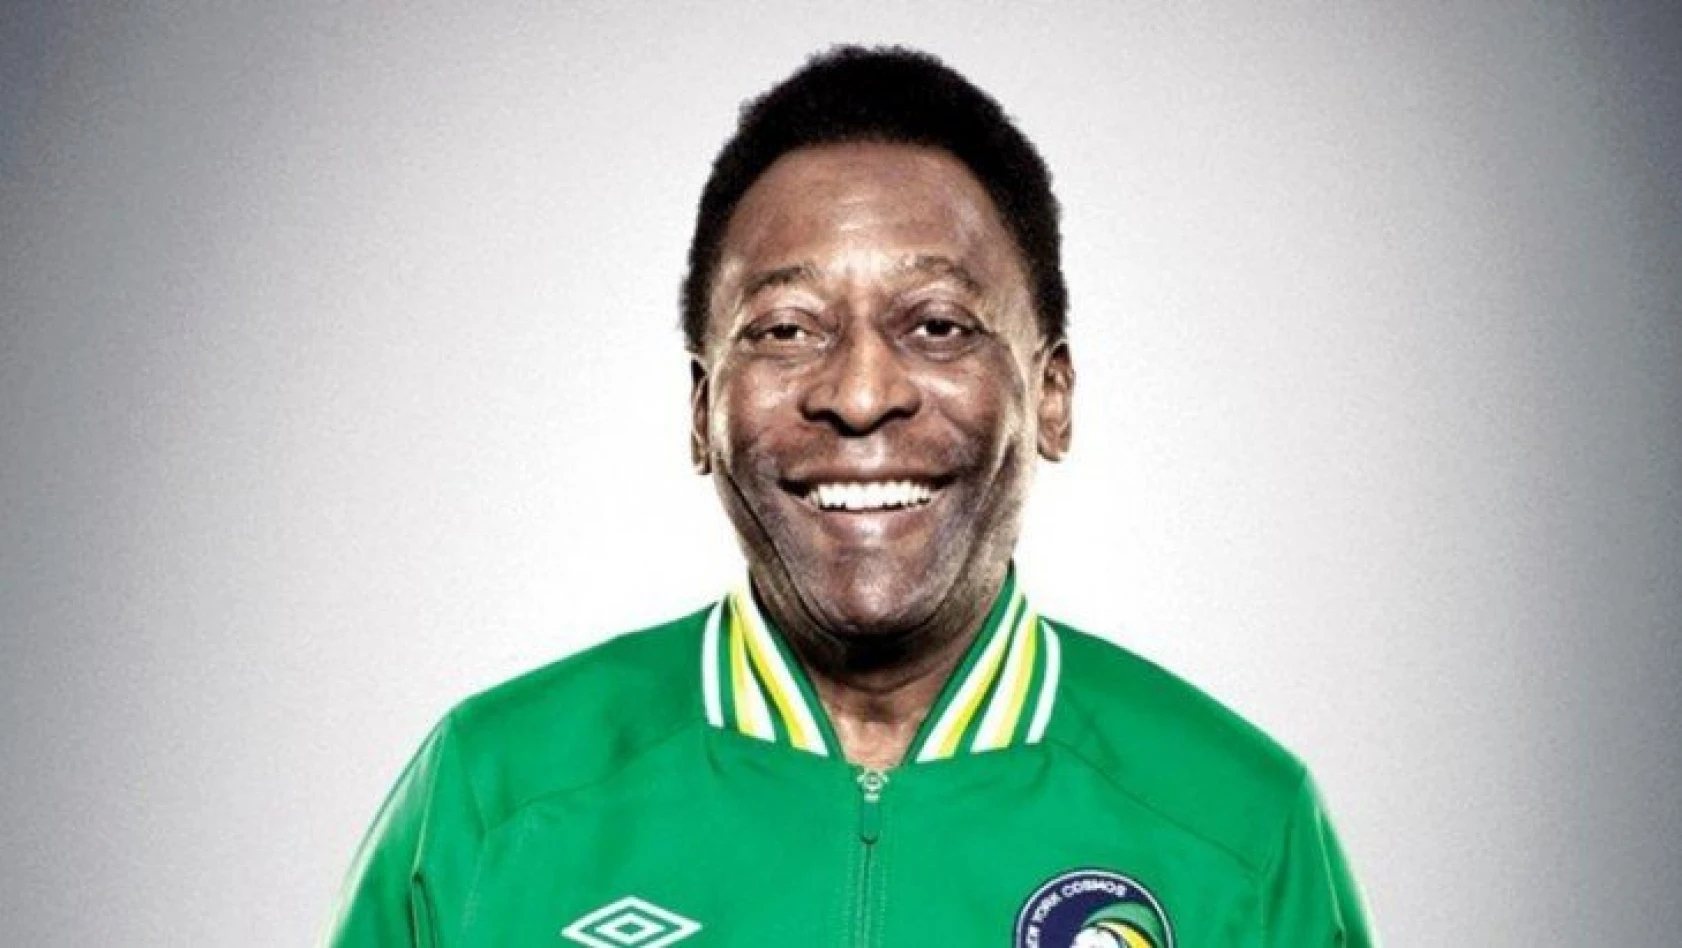 Efsane futbolcu Pele, yoğun bakıma alındı